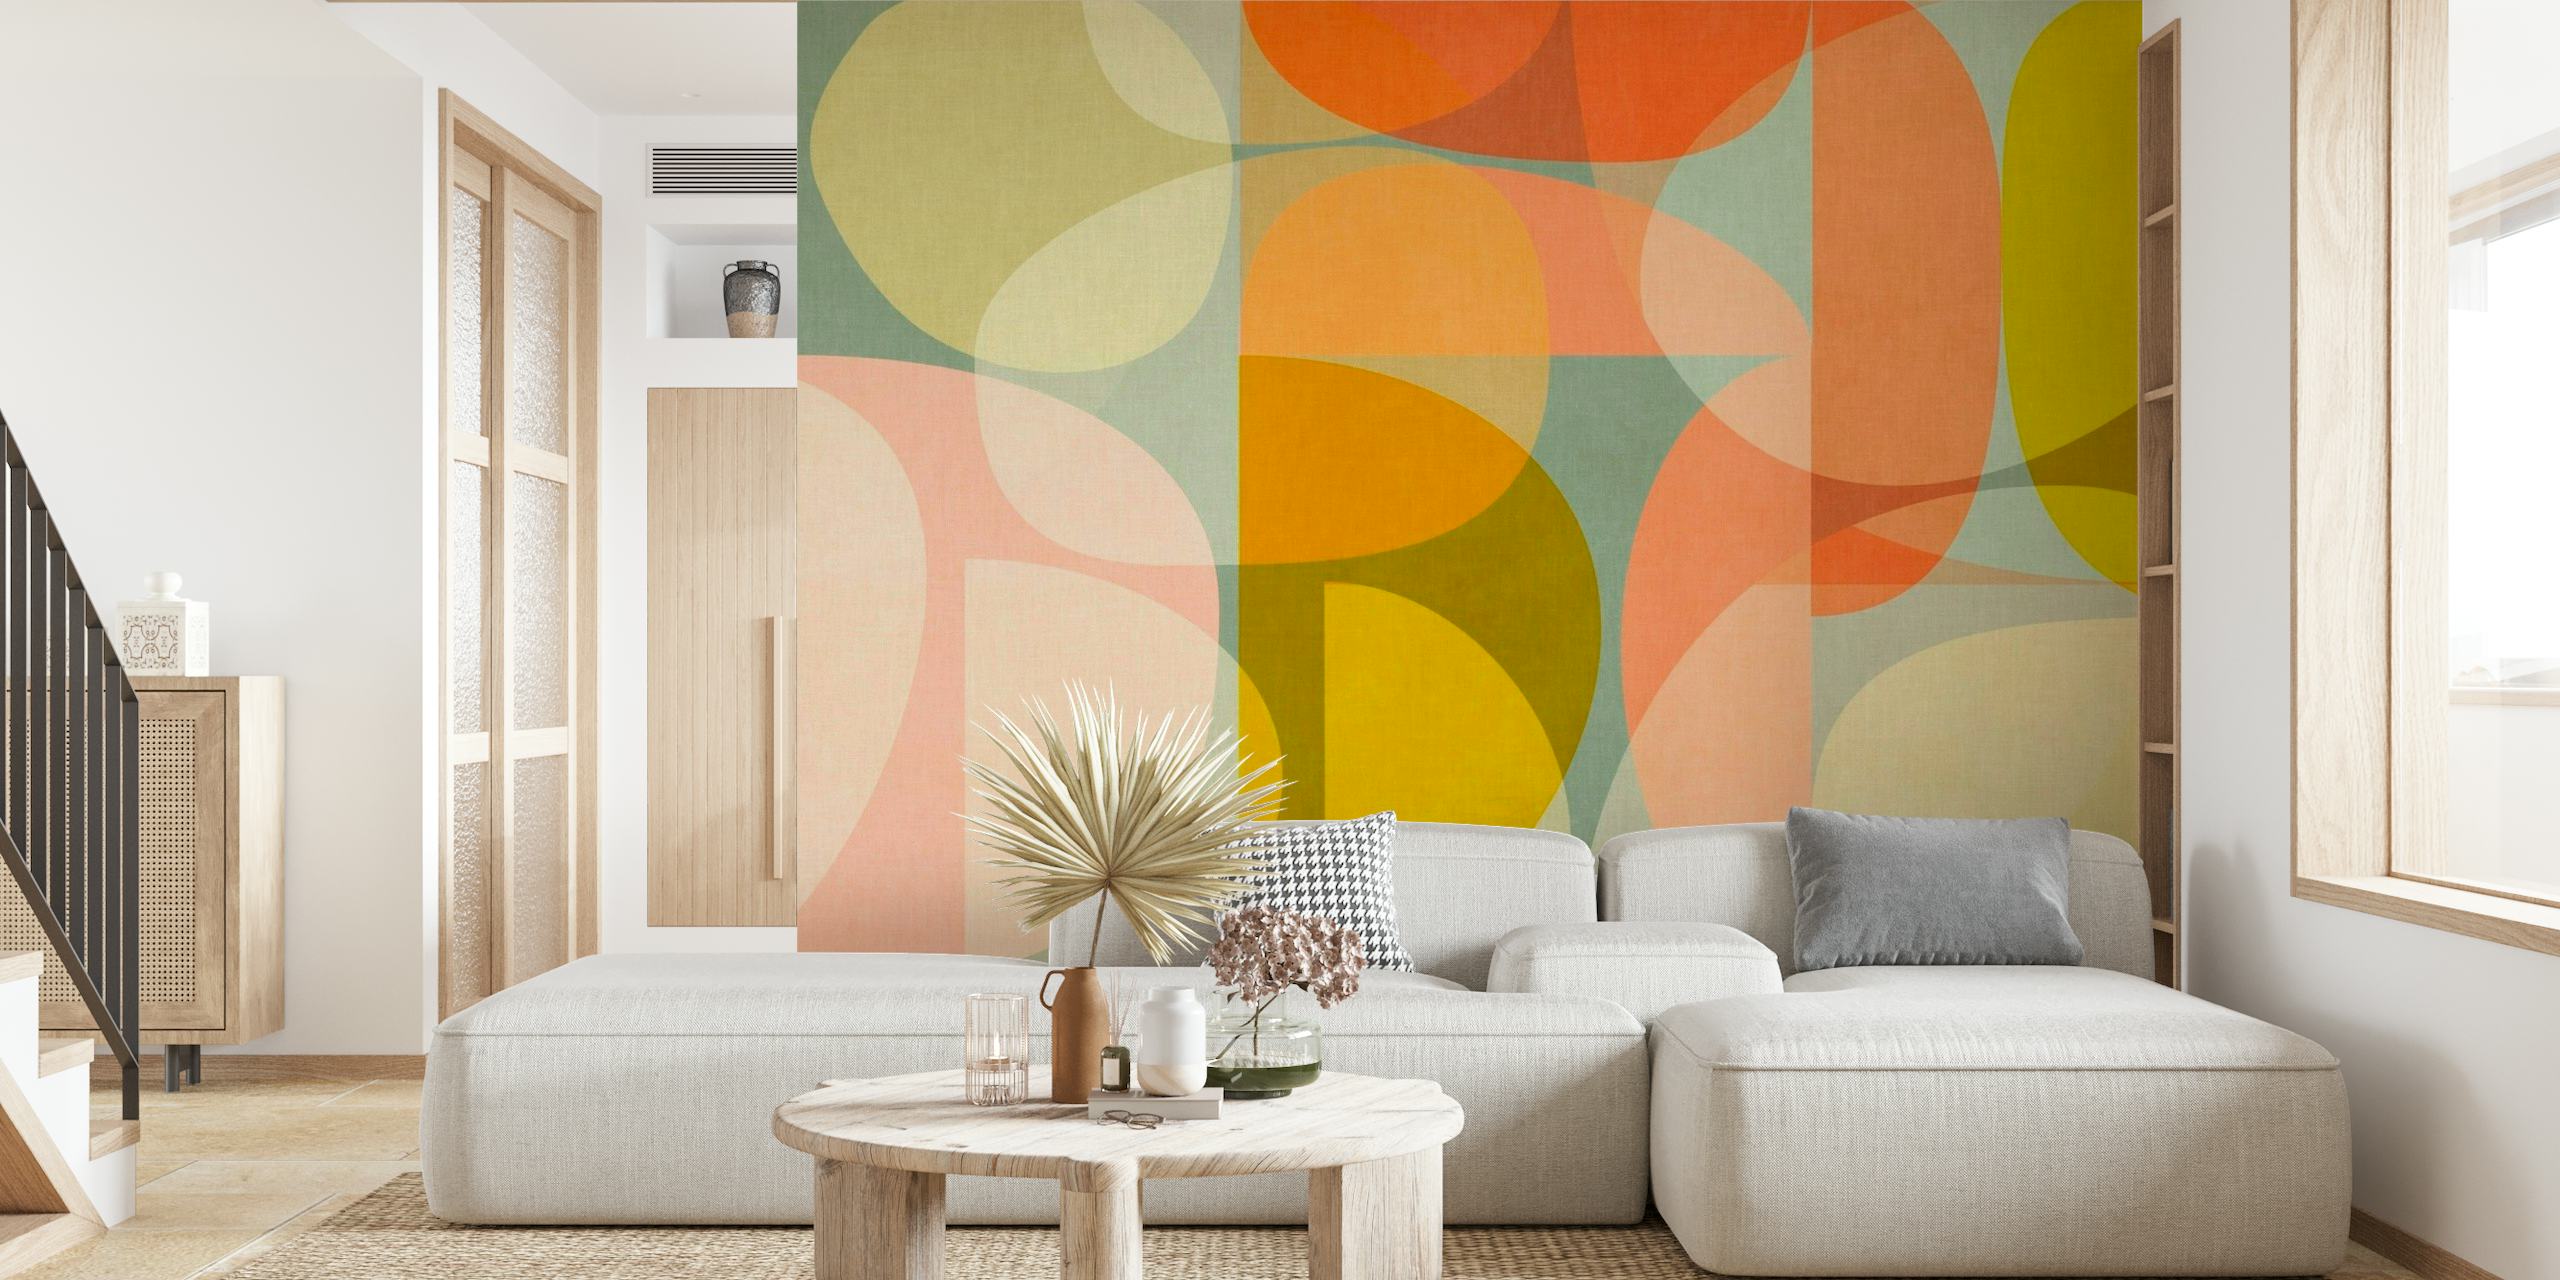 Zidna slika s apstraktnim polukrugovima u toplim i neutralnim tonovima